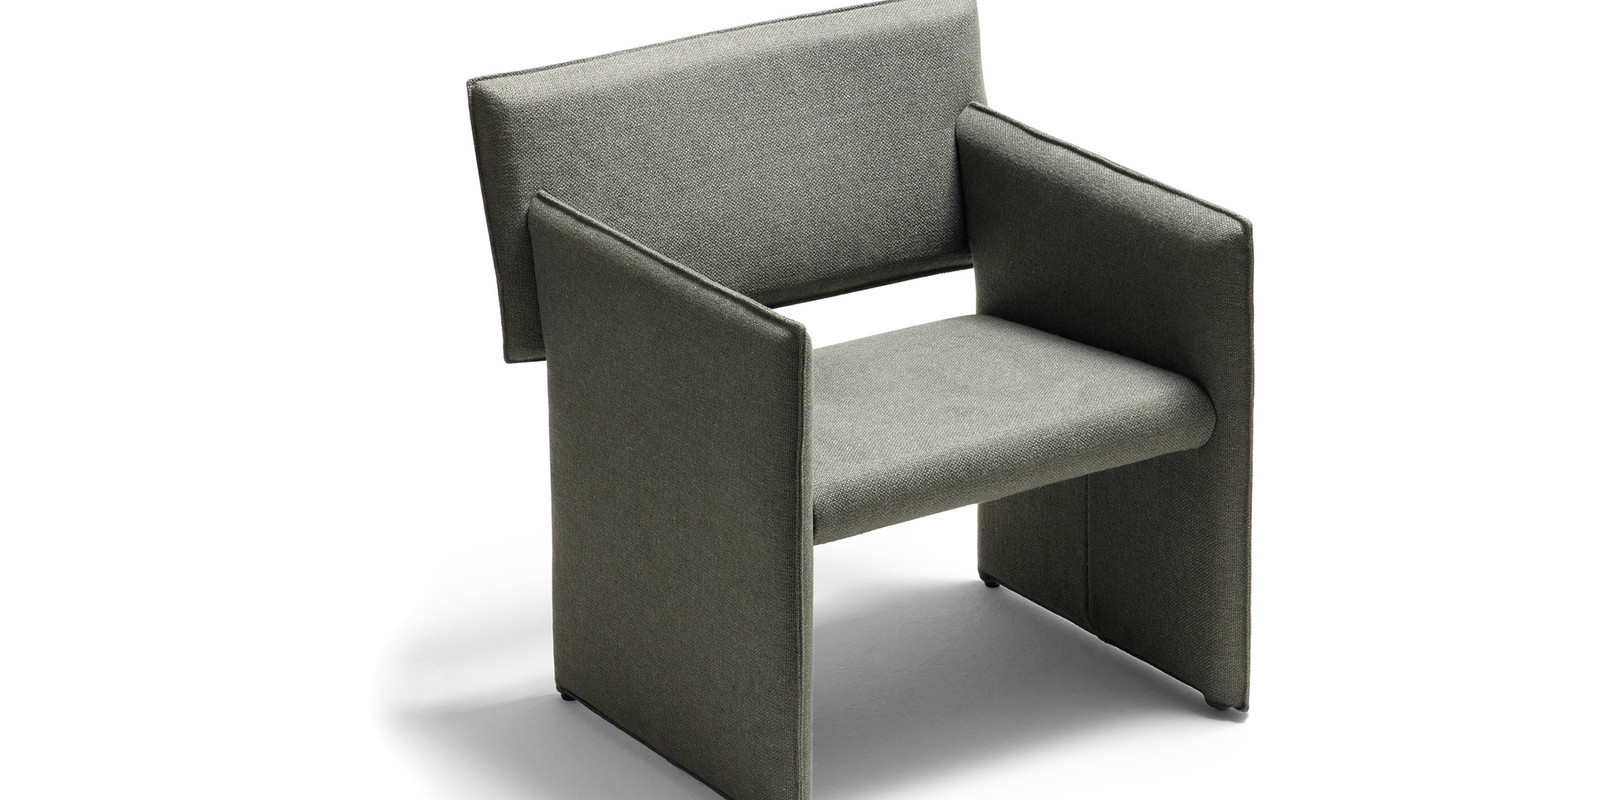 Noto Stuhl und Sessel von COR: Im Minimum wohnt das Maximum Bild 3